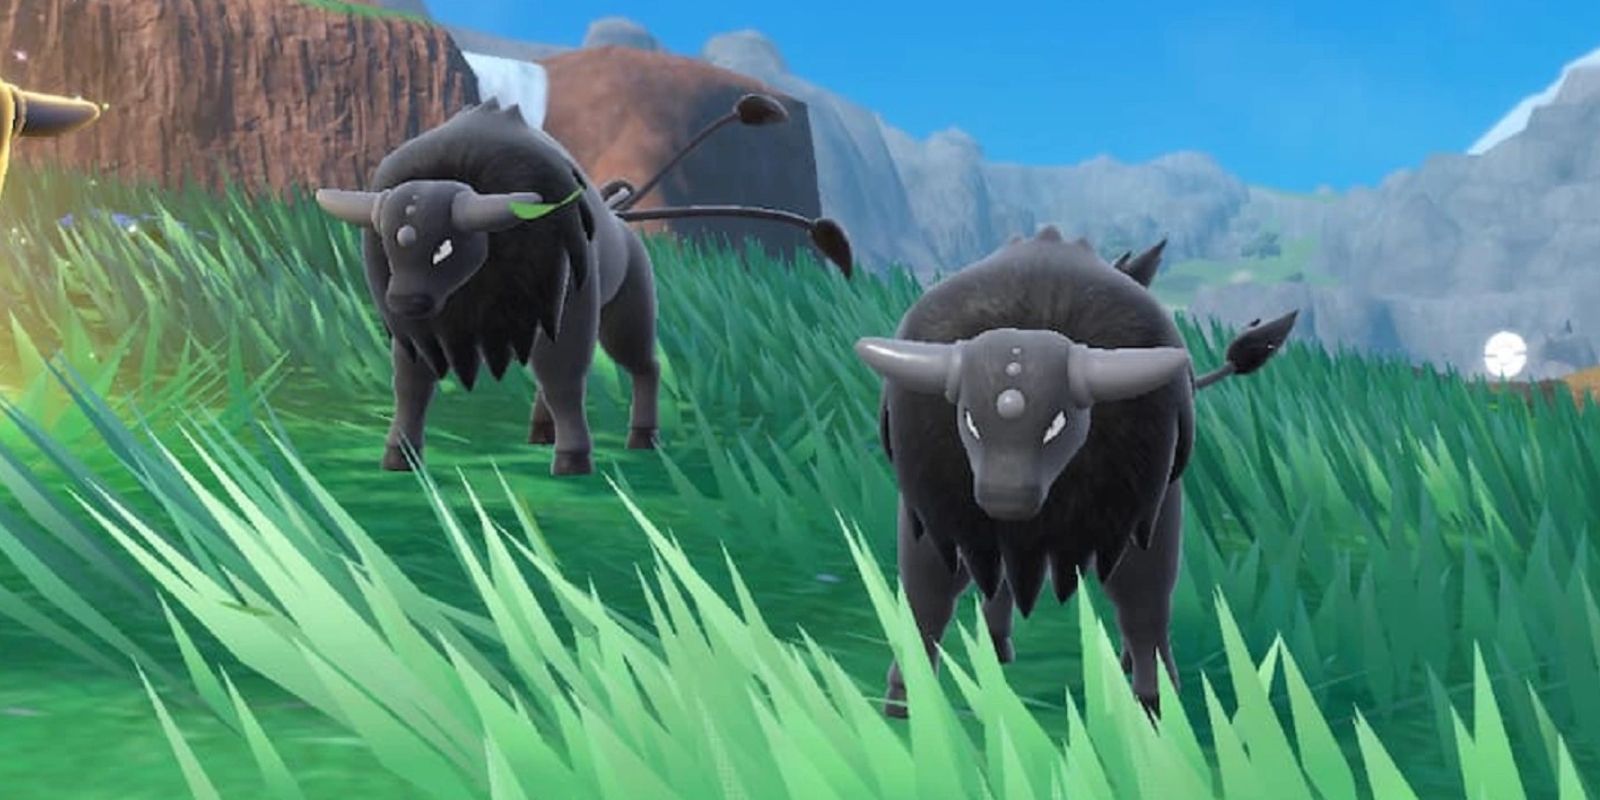 Dois Tauros, Pokémon que se assemelham a touros do mundo real, parados em um campo gramado com uma cachoeira ao longe.